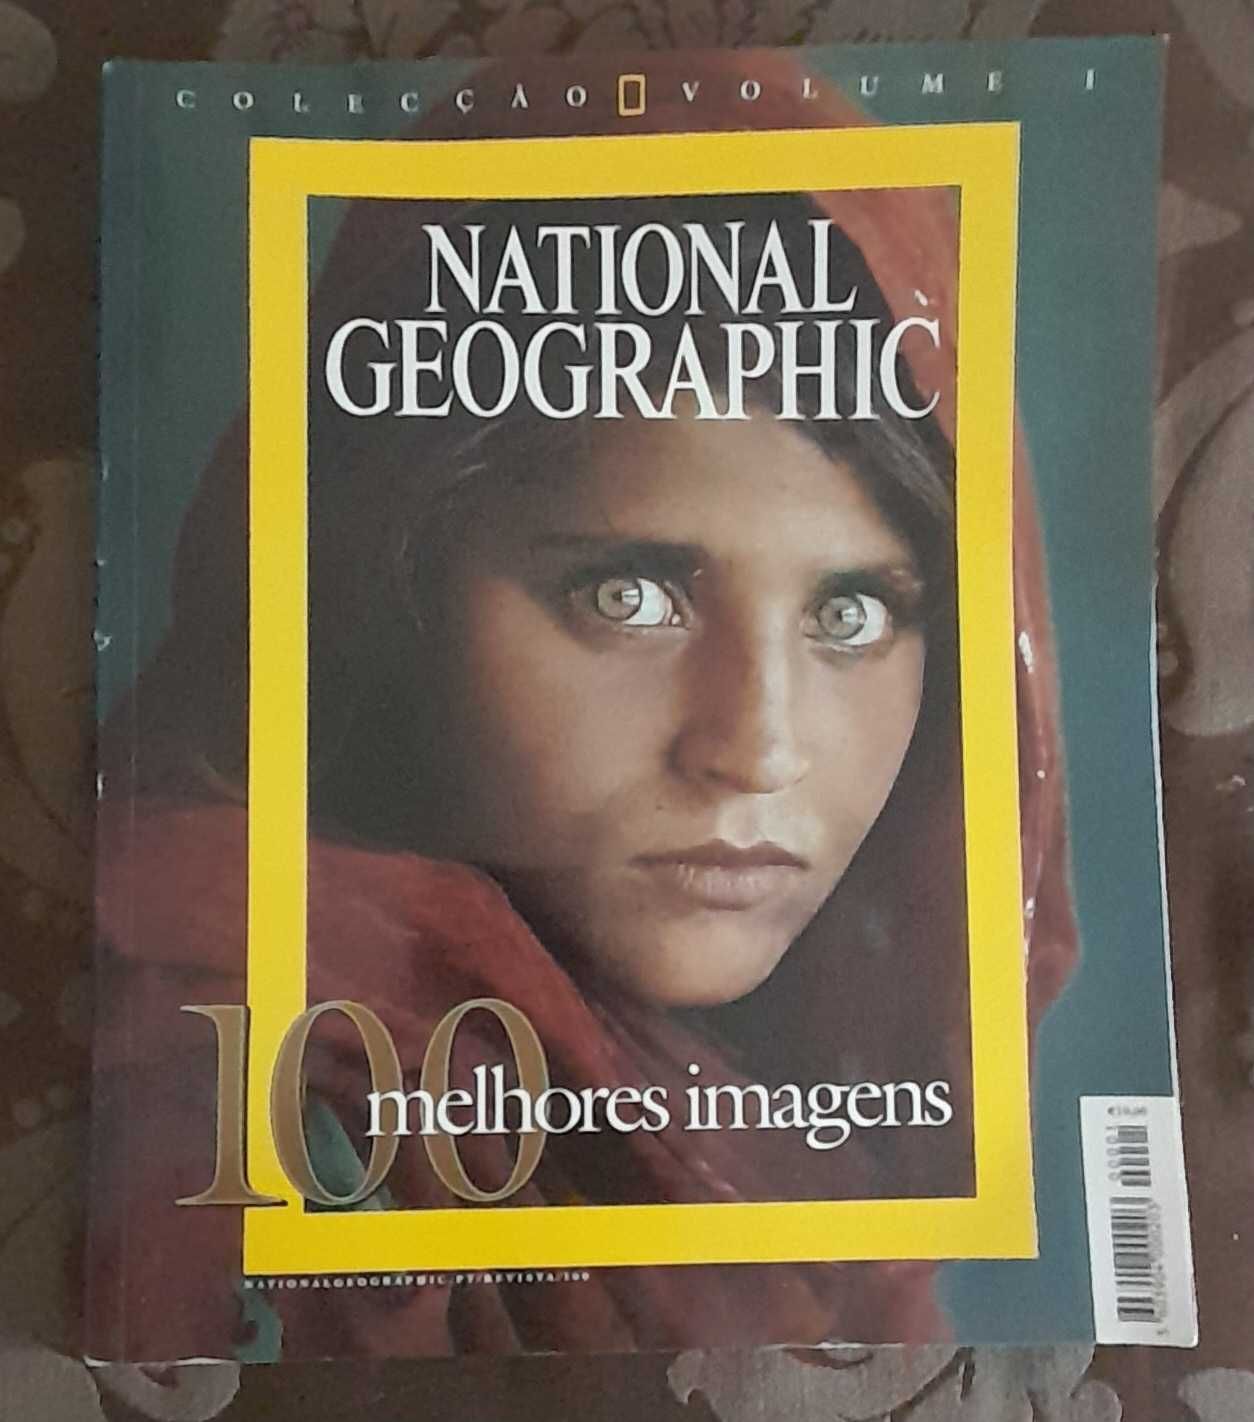 National Geografhic - 100 melhores imagens - 2002